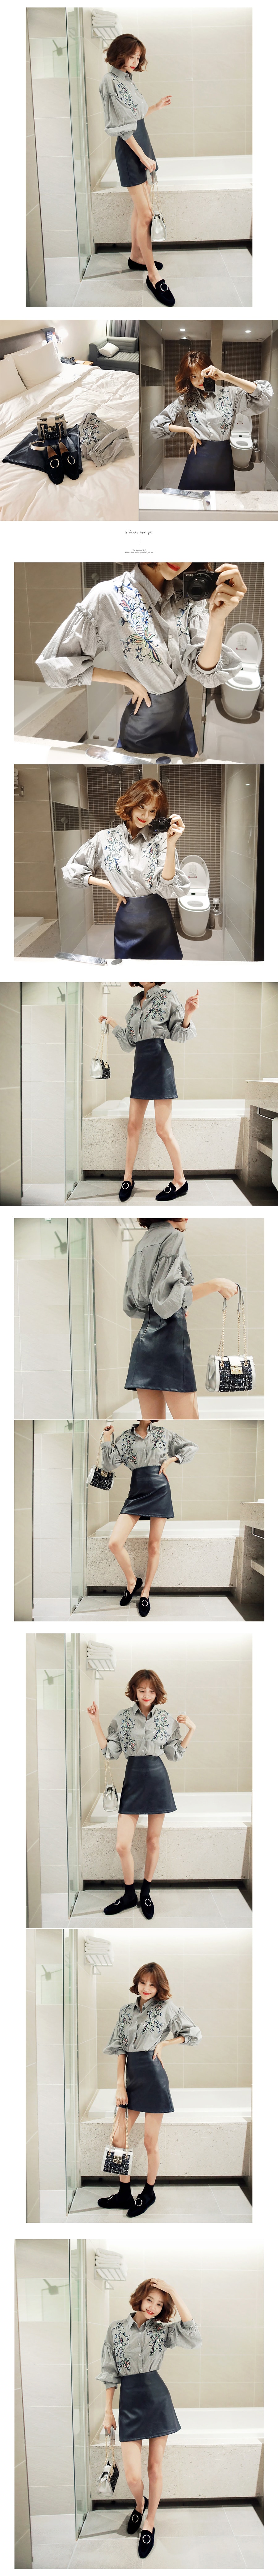 [KOREA] Faux Leather Mini Skirt #Black M(27-28) [免费配送]